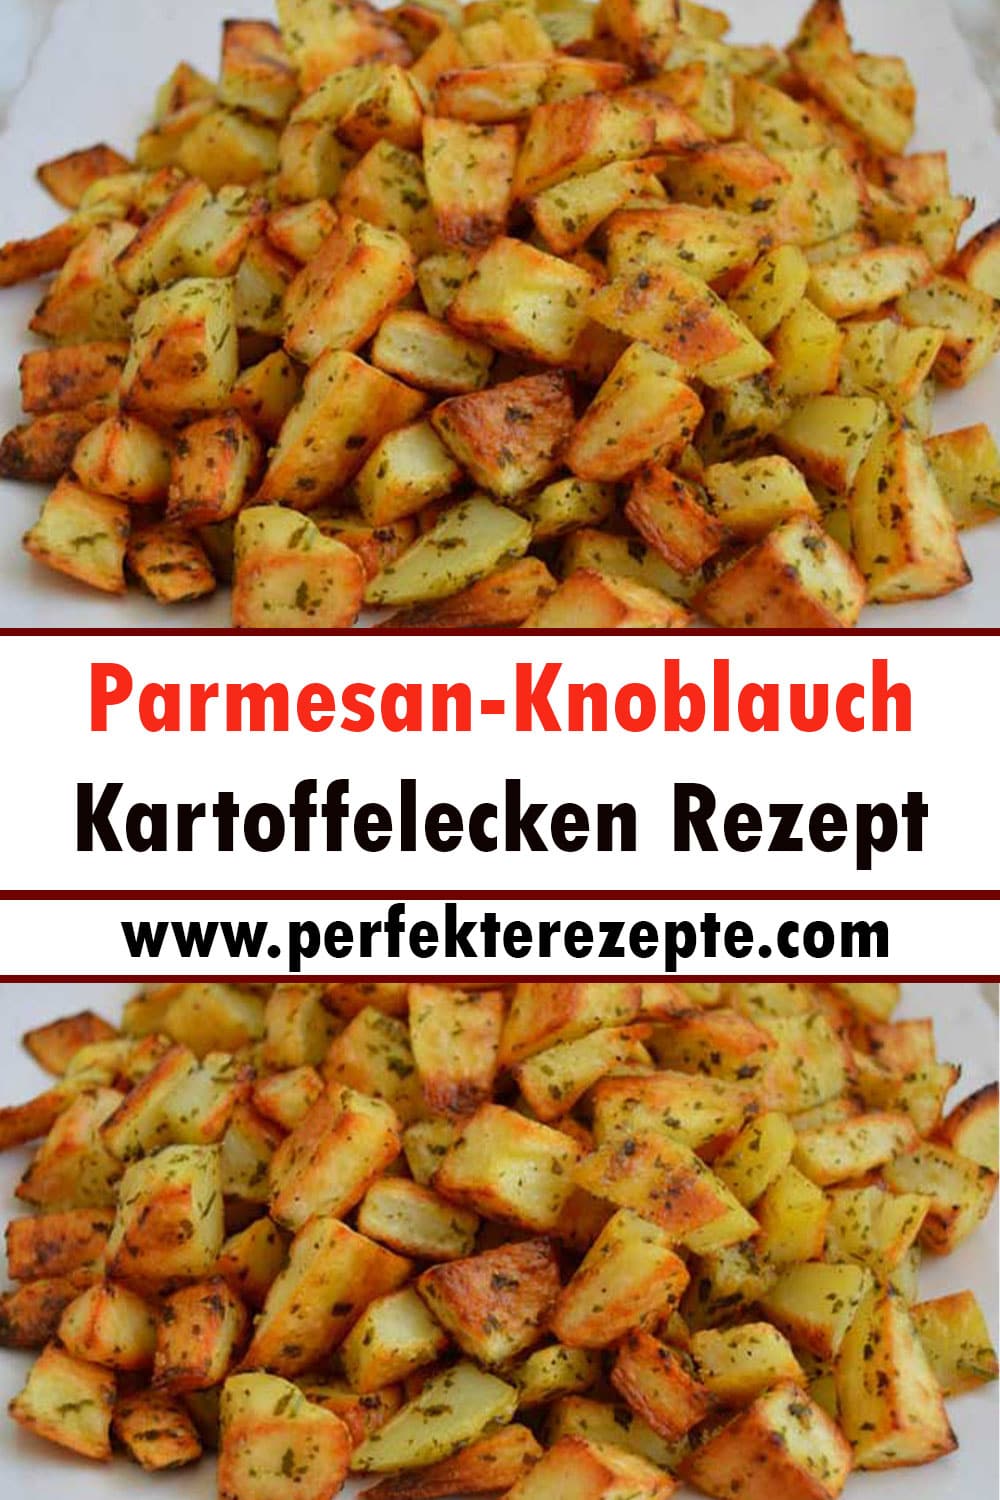 Parmesan-Knoblauch-Kartoffelecken Rezept oder leckerer Snack